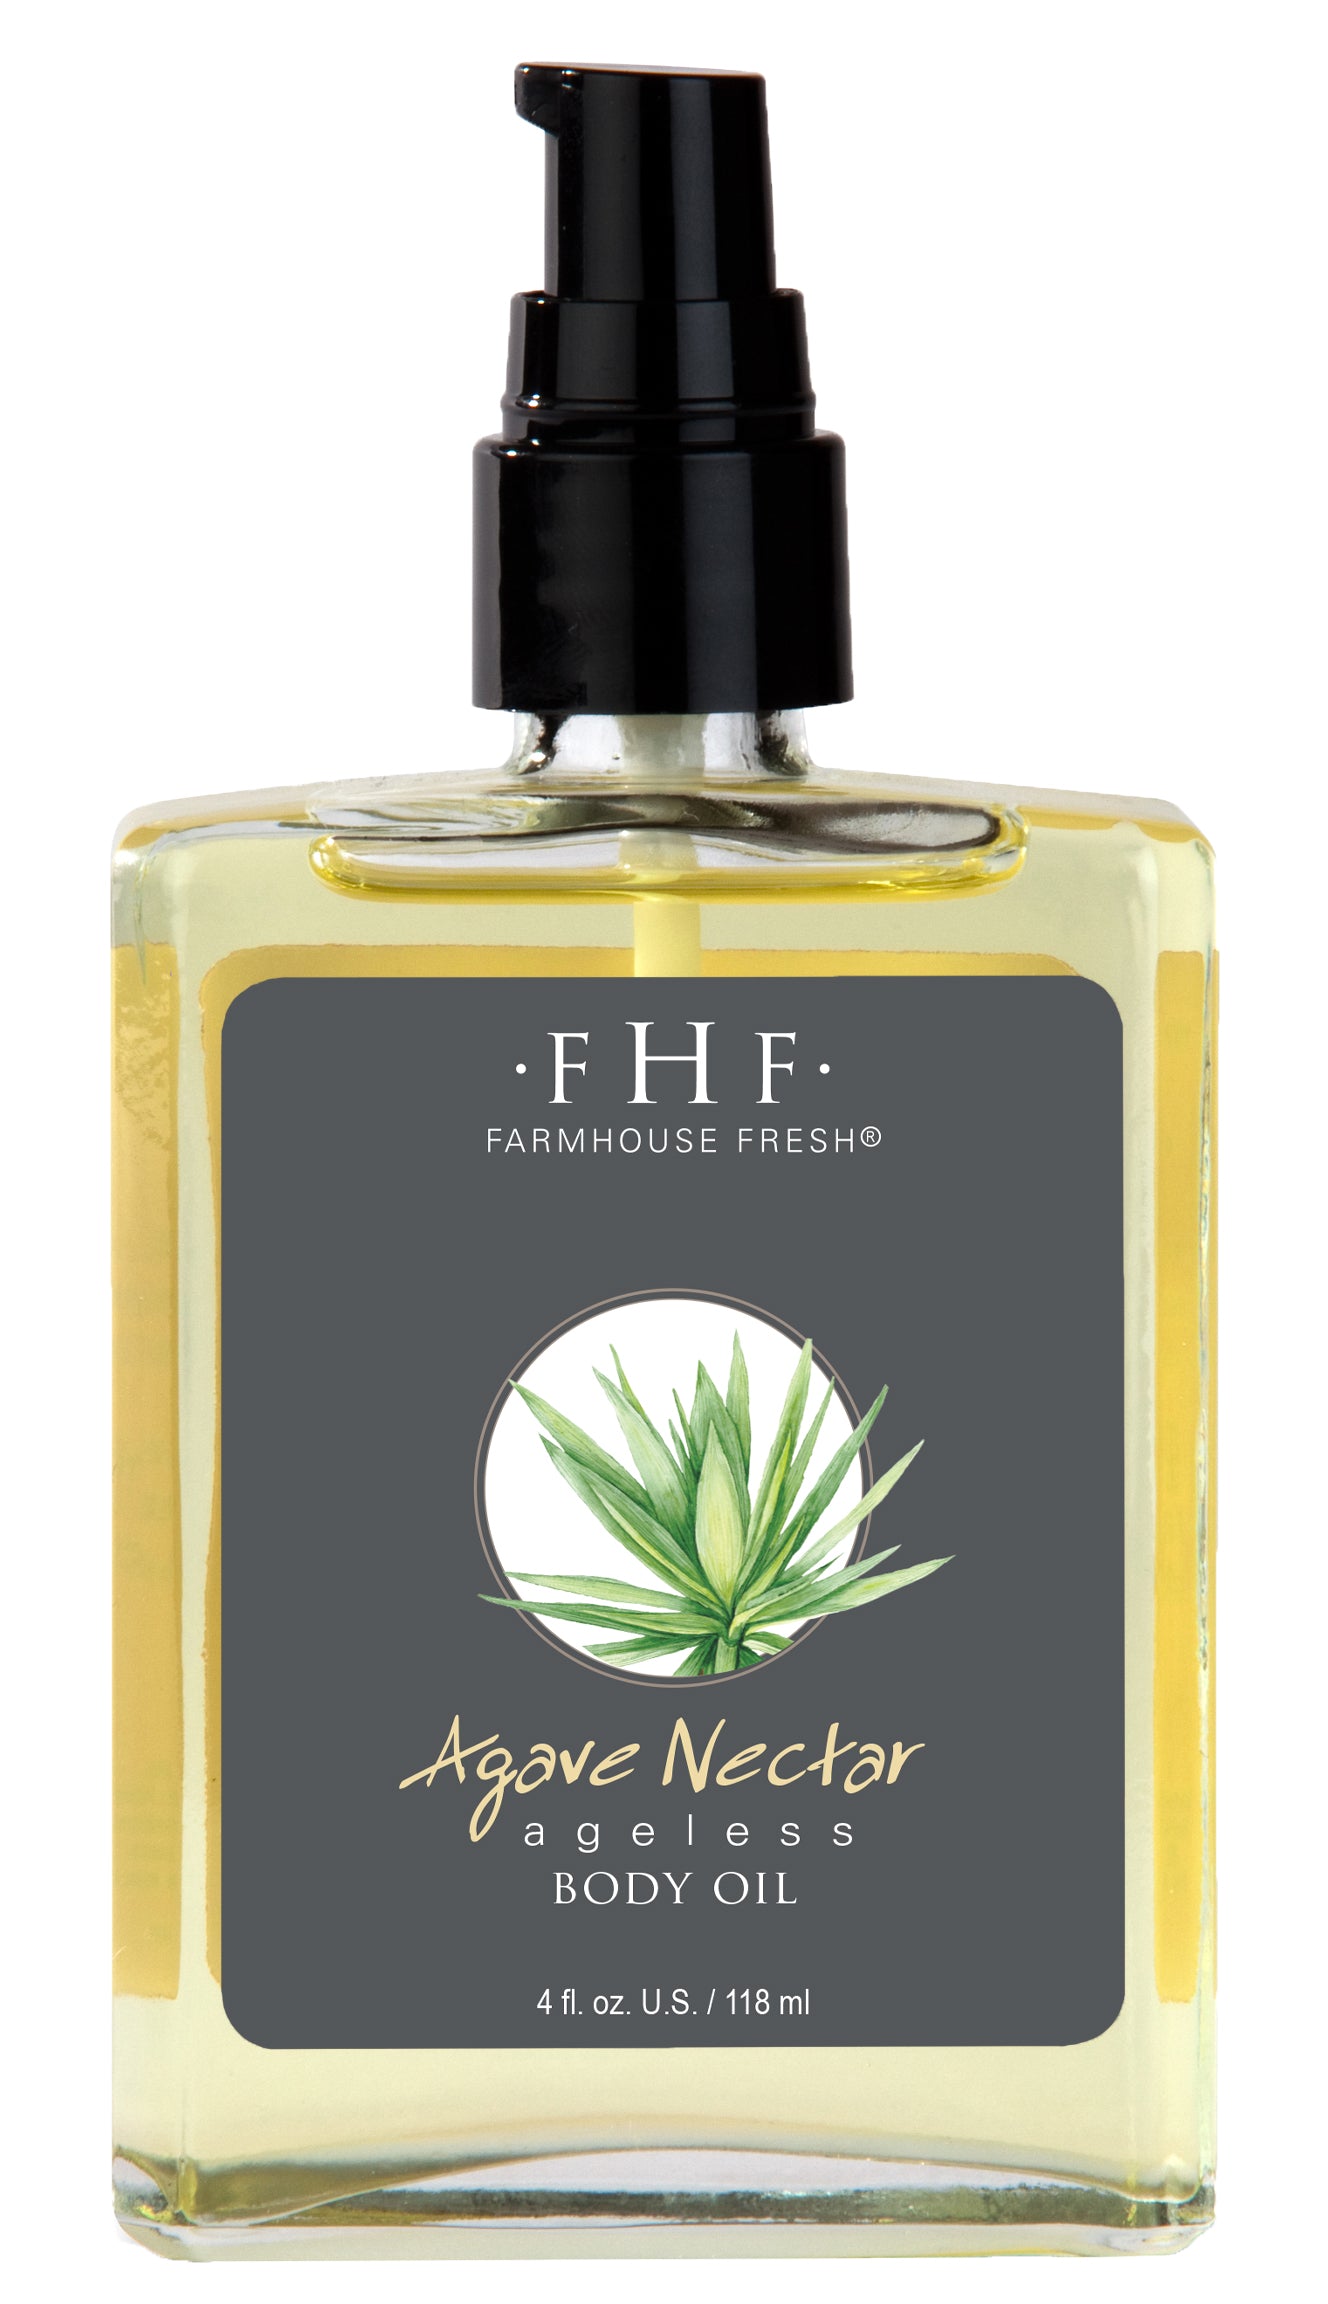 Farm House Fresh Agave Nectar Ageless Body Oil